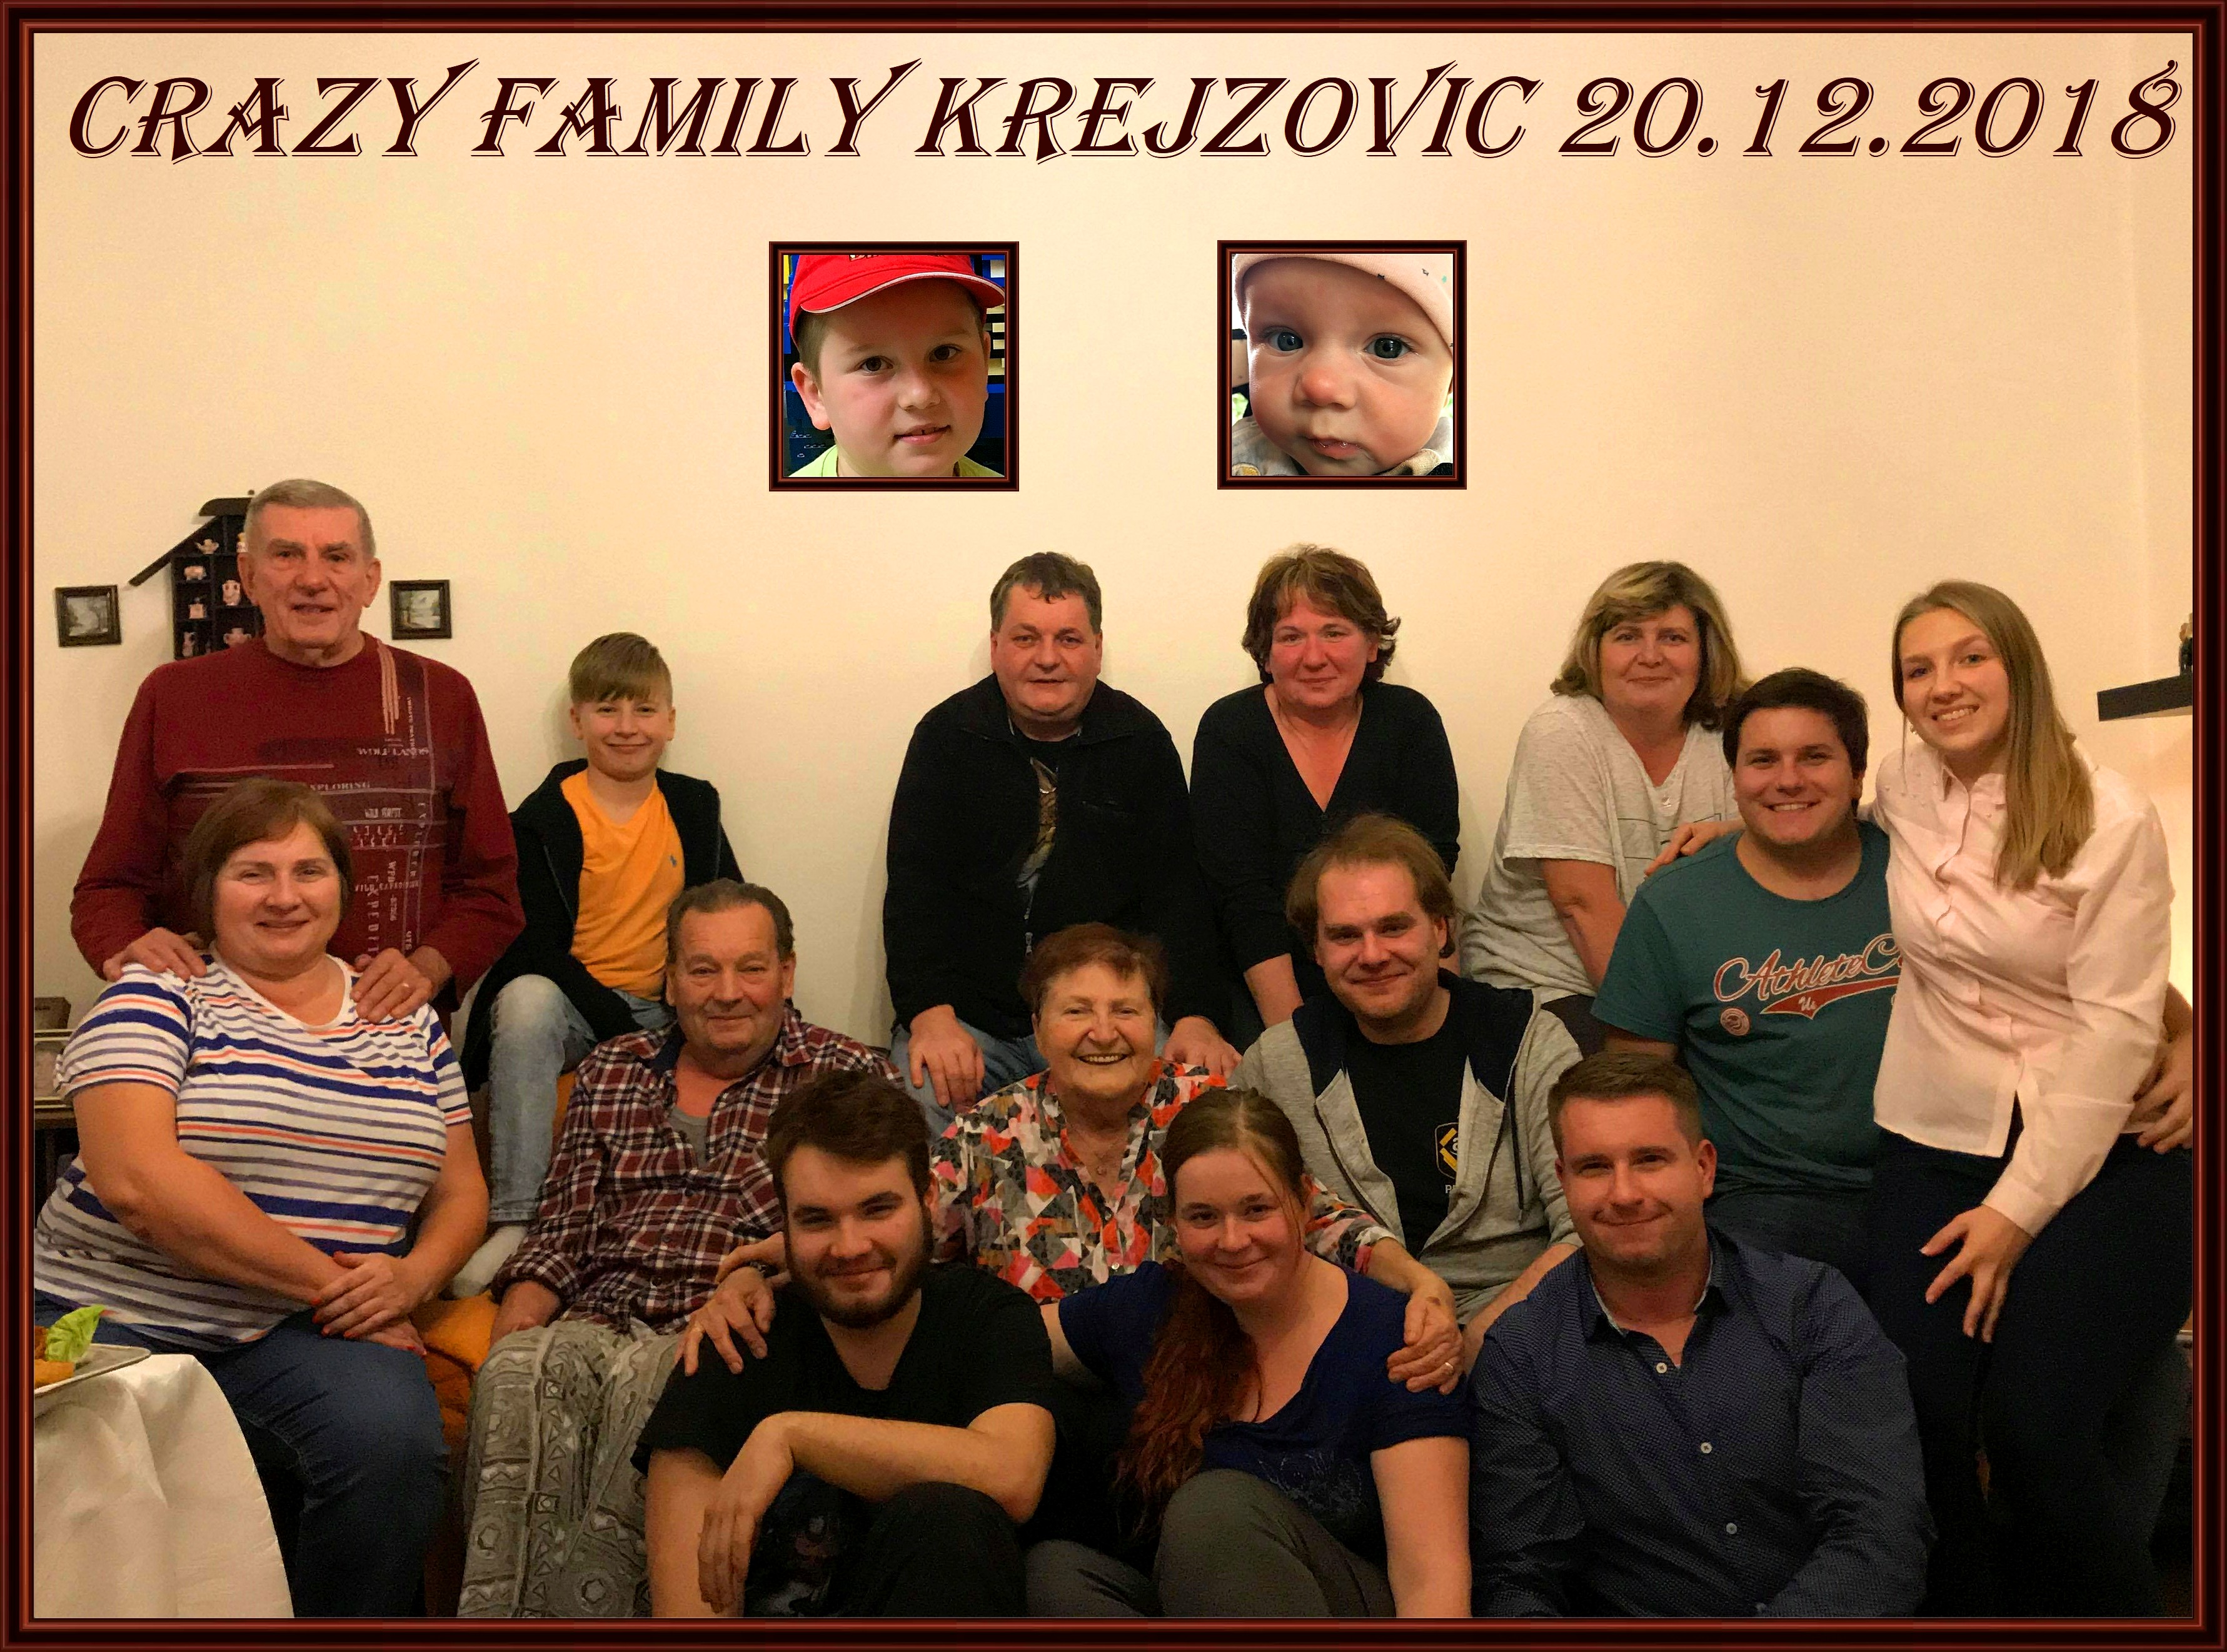 crazy family Krejzovic